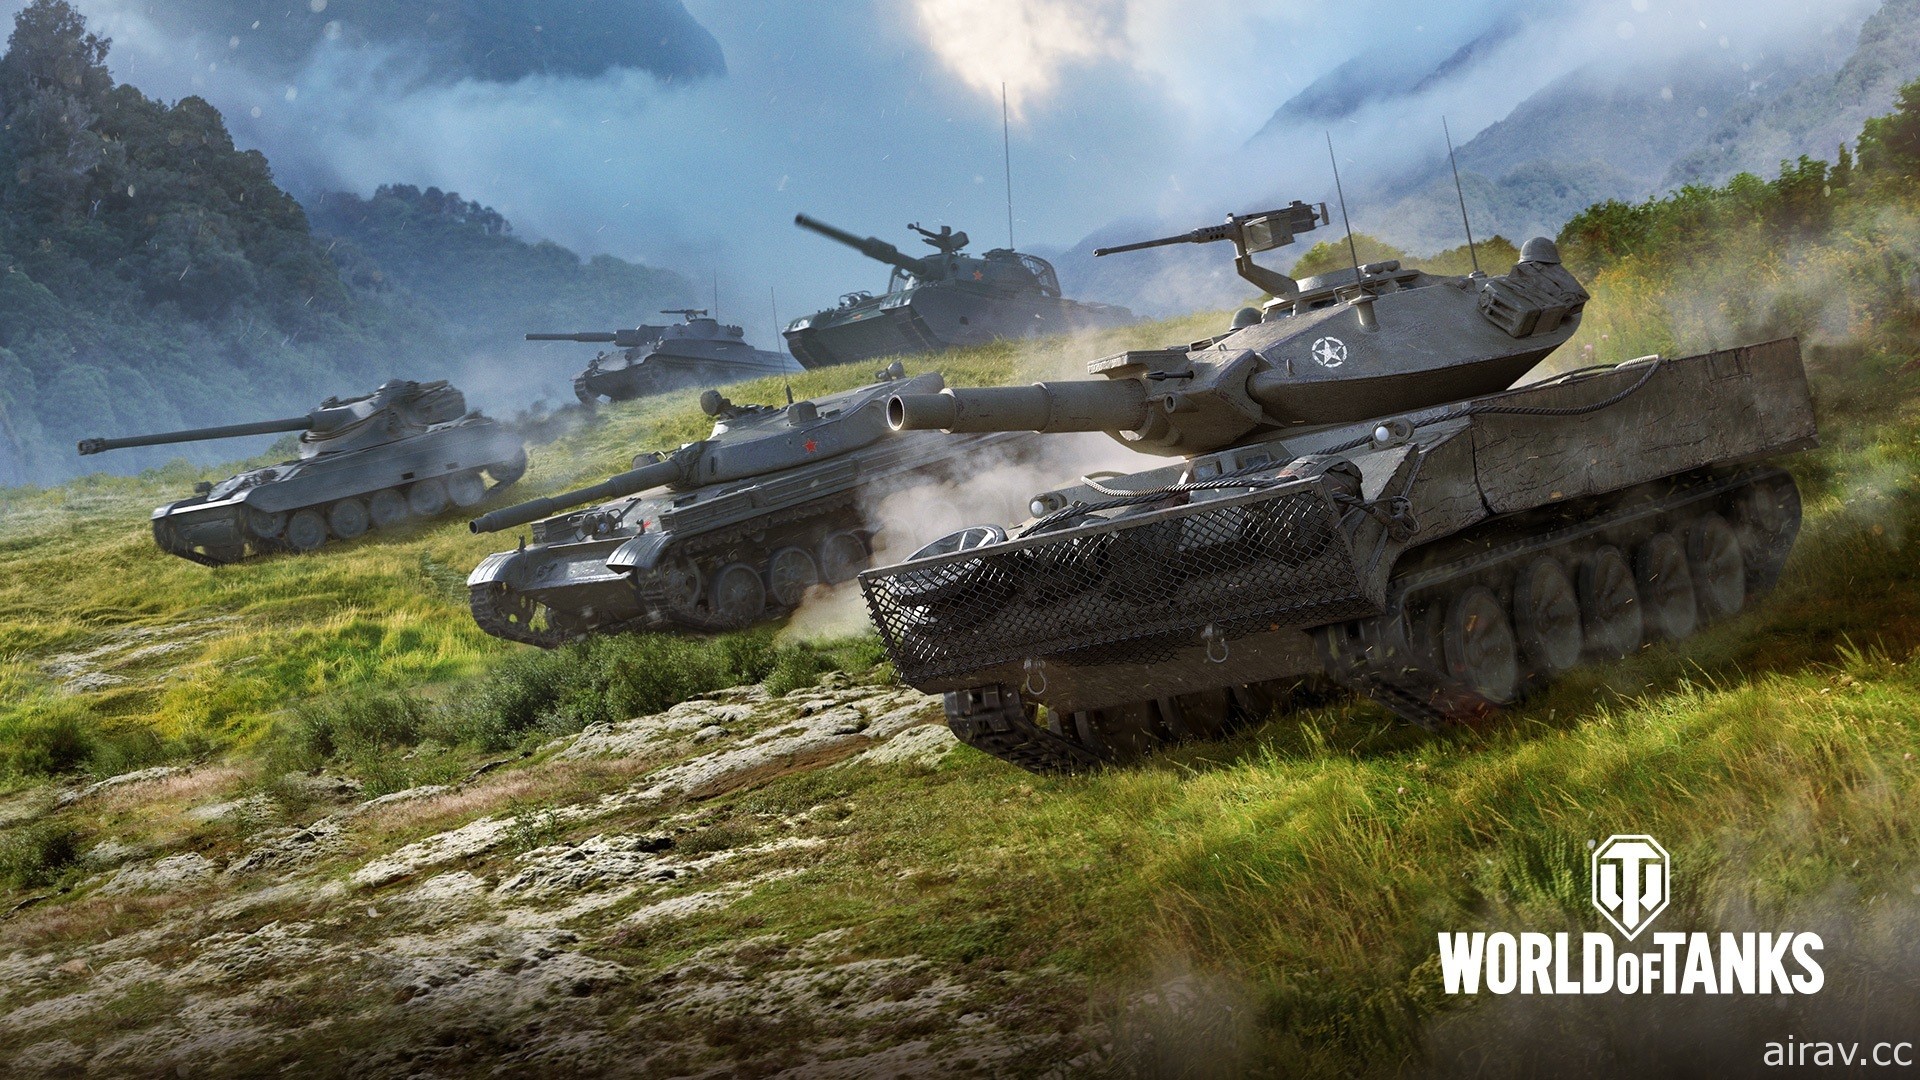 戰遊網首場 Steam 發行商周末開跑 《戰車世界》《戰艦世界》玩家可免費領取 DLC 活動禮包